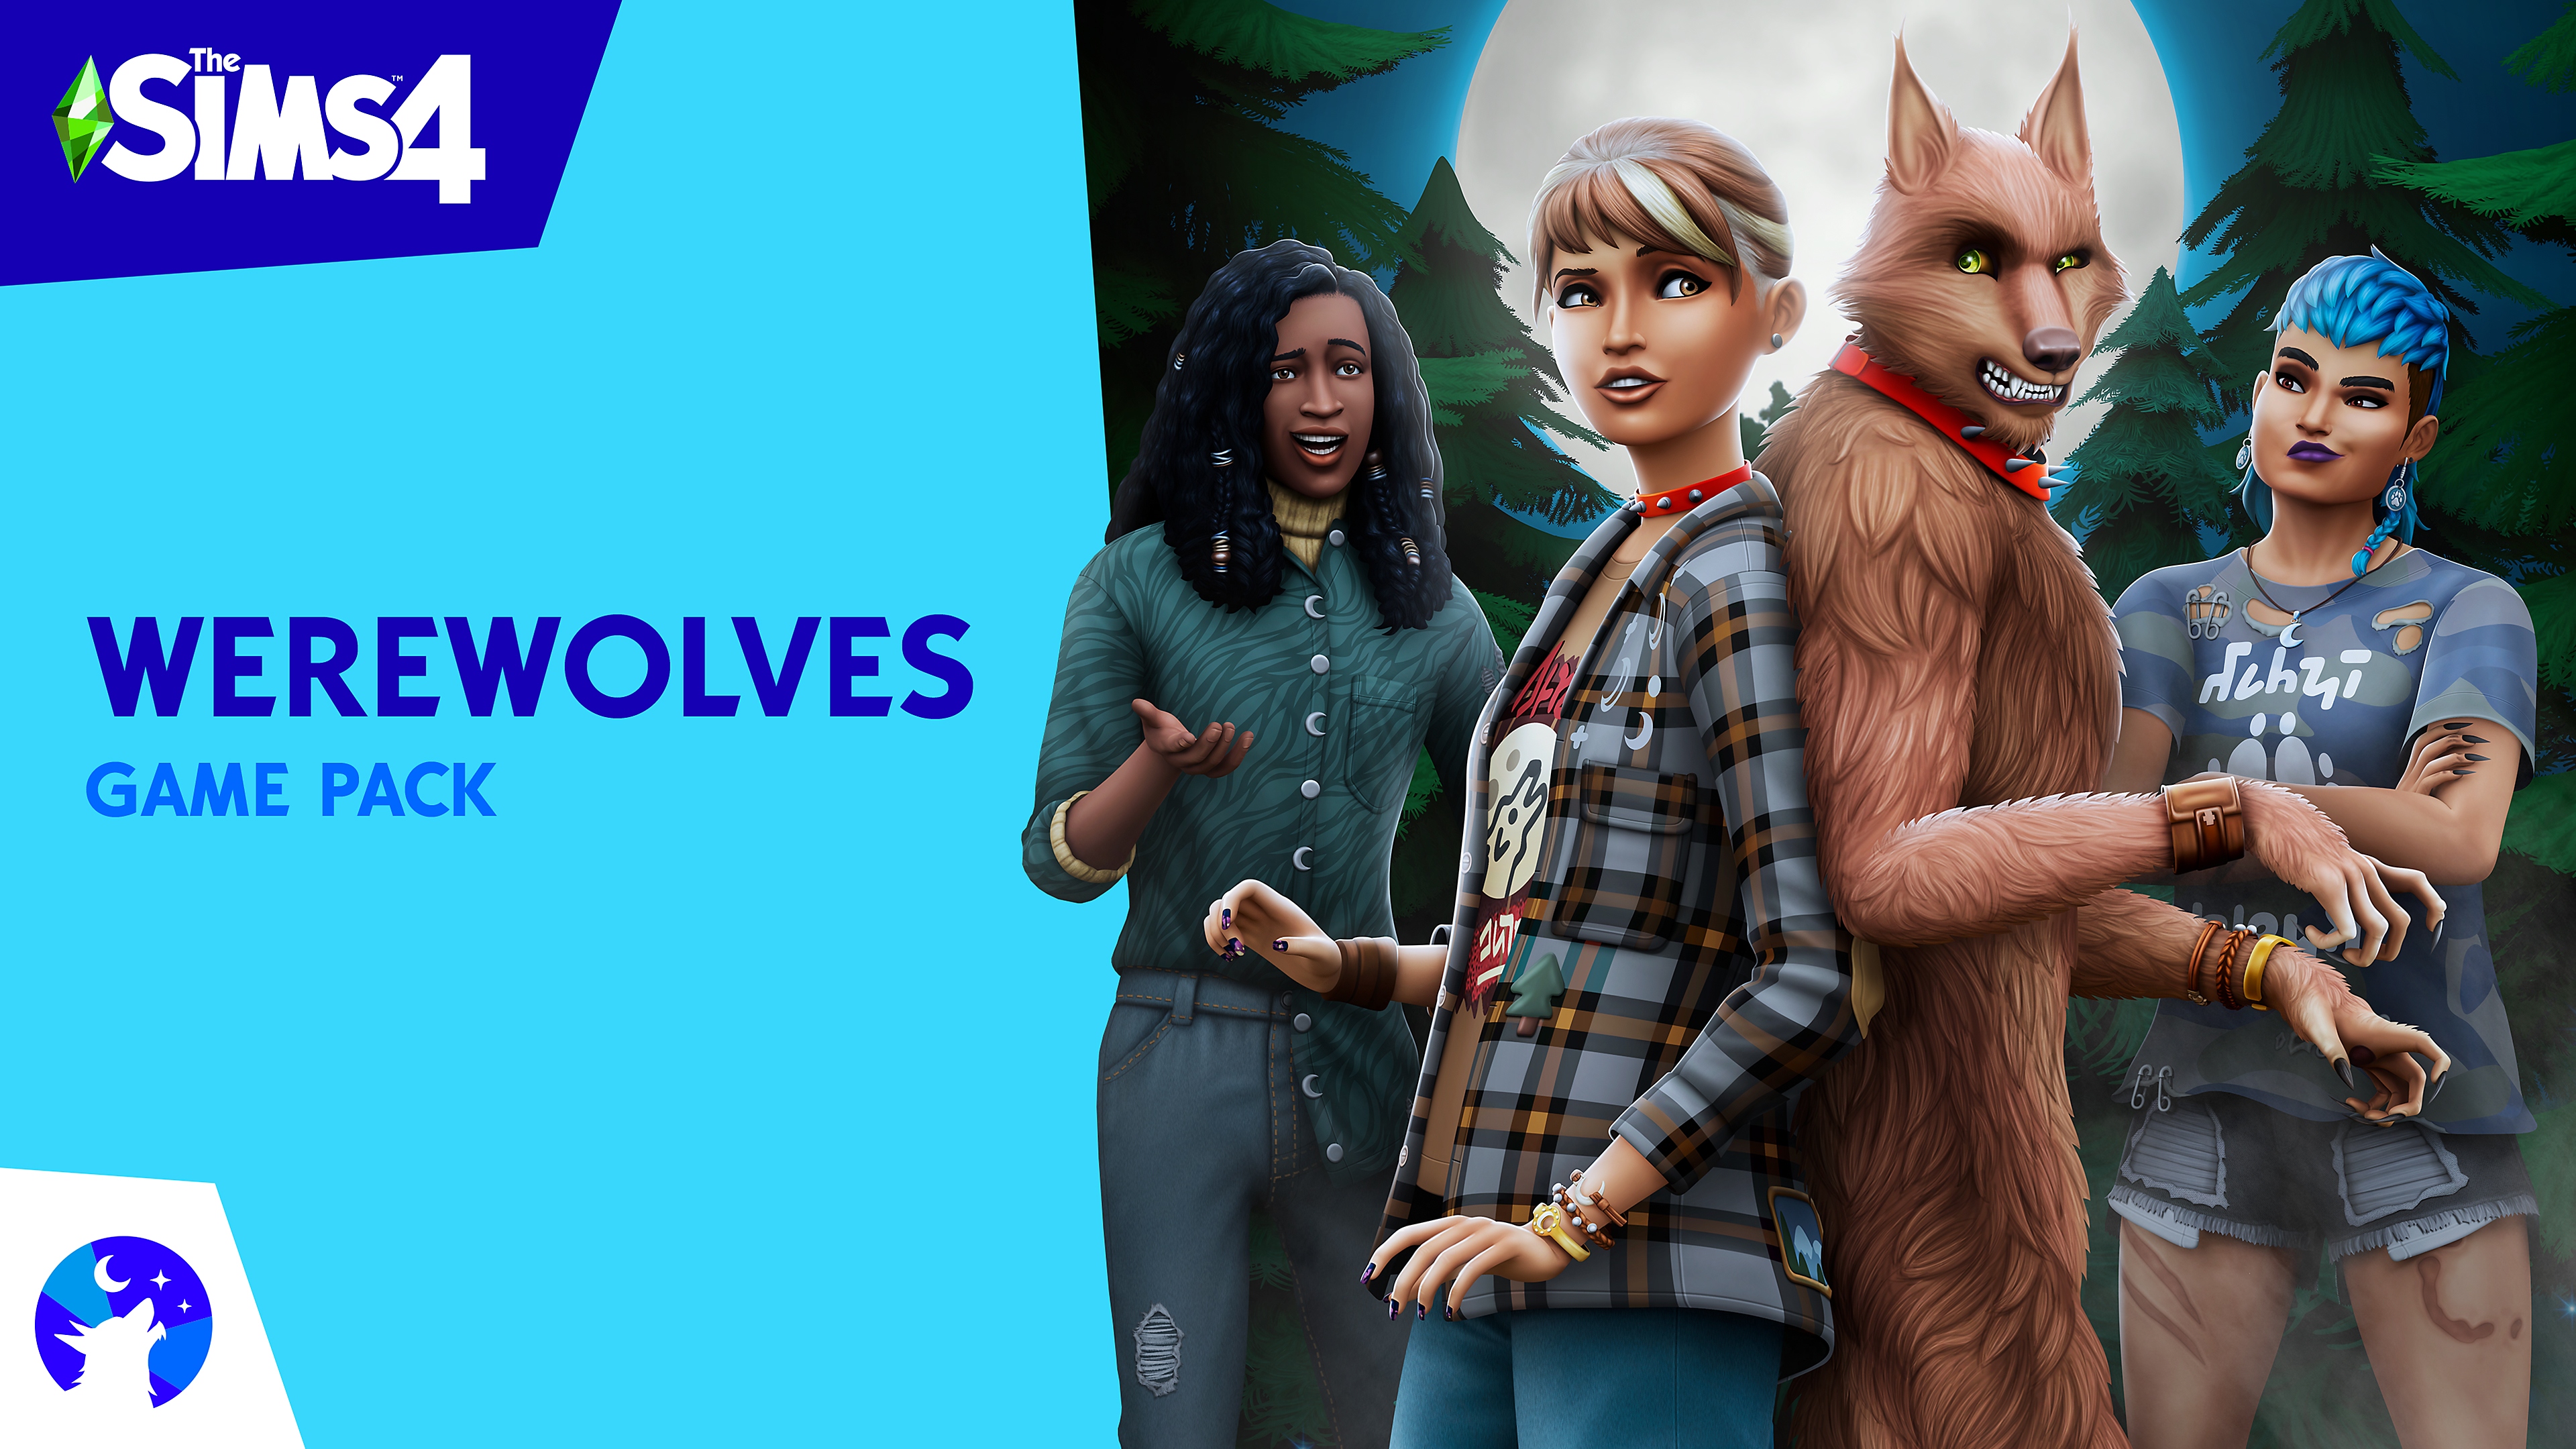 The Sims 4 Werewolves játékcsomag főgrafika Sims-karakterekkel és egy vérfarkassal